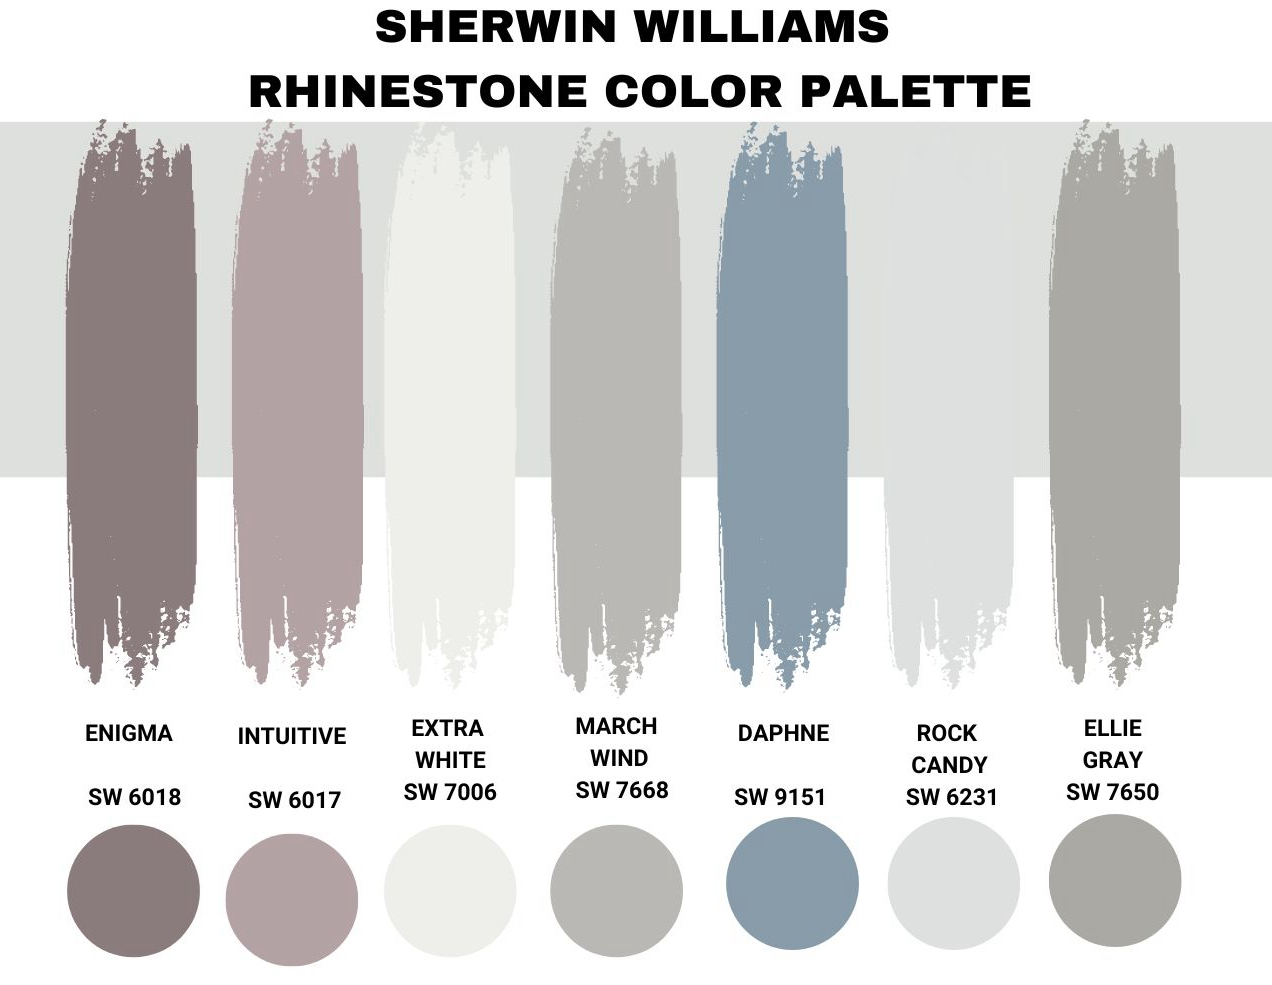 Sherwin Williams Rhinestone Color Palette